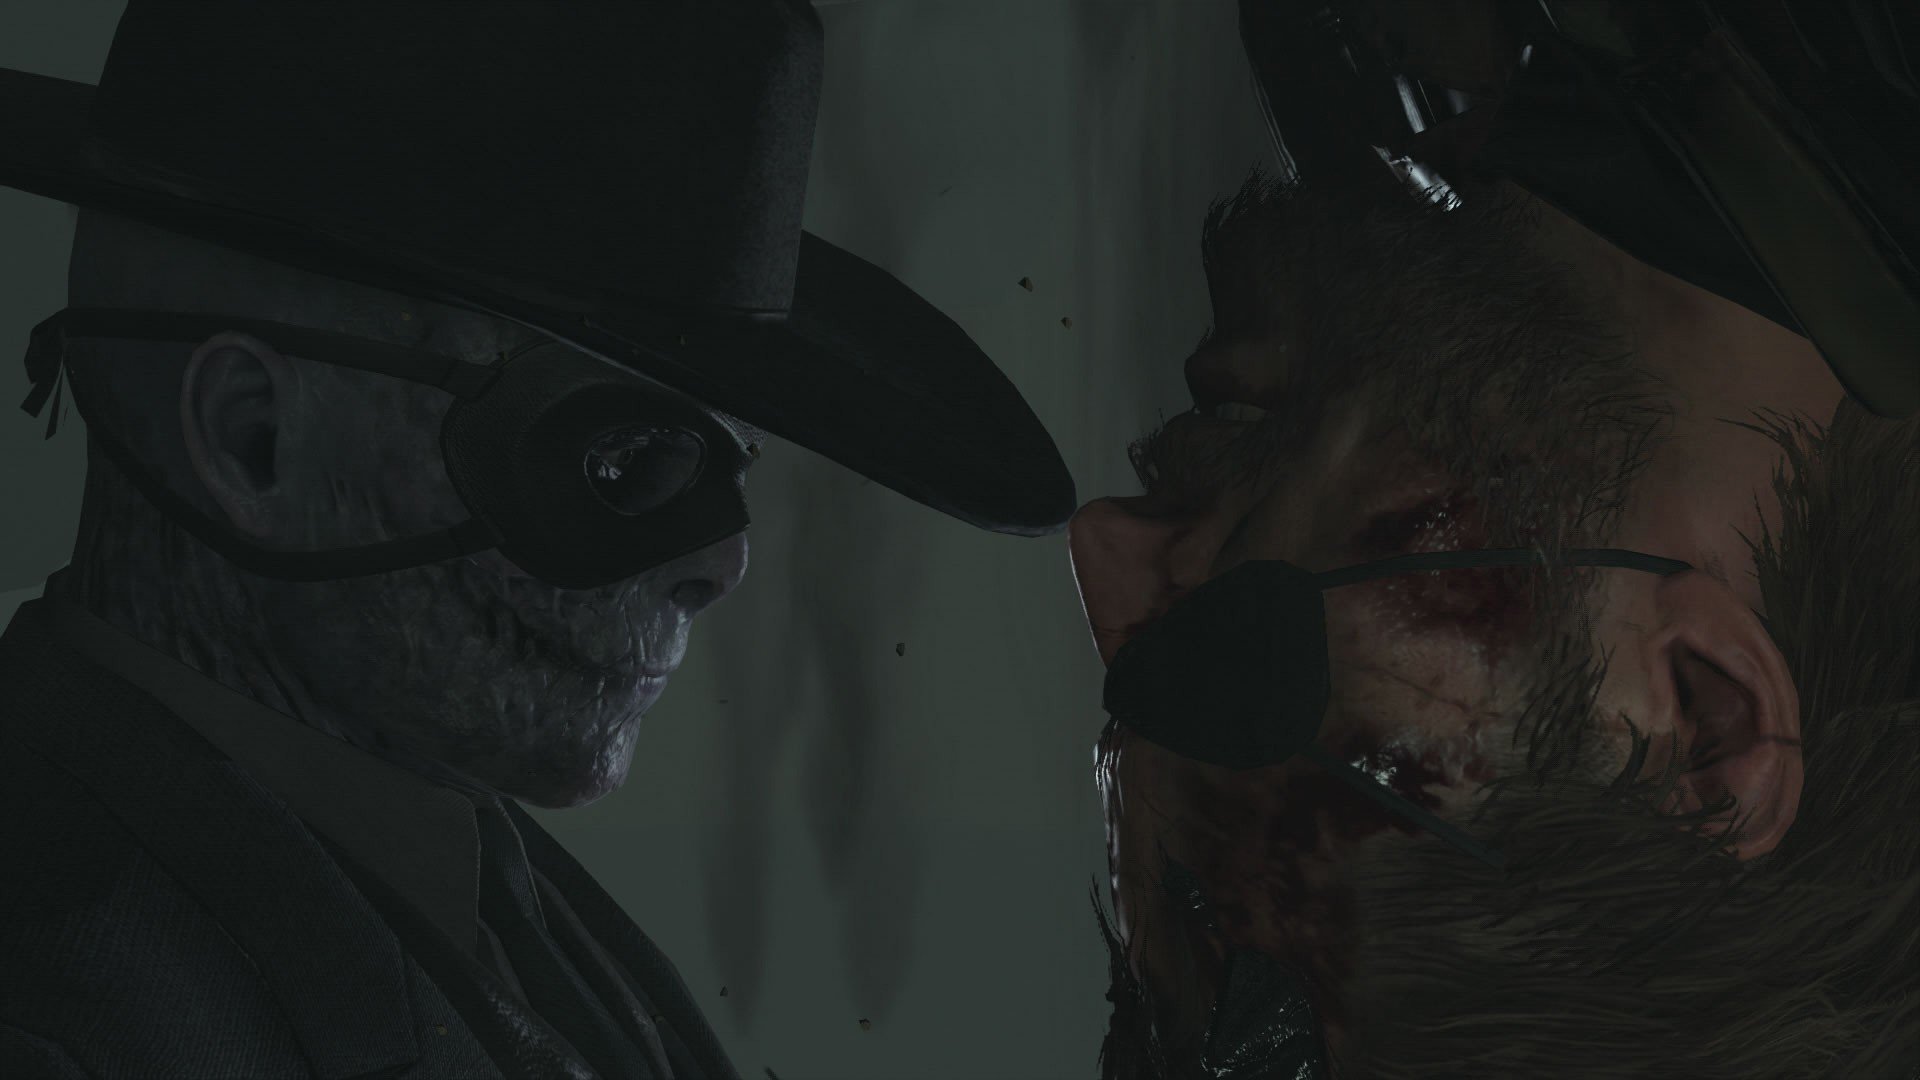 Metal-Gear-Solid-V-The-Phantom-Pain-E3-2015-Screen-Big-Boss-Skull-Face